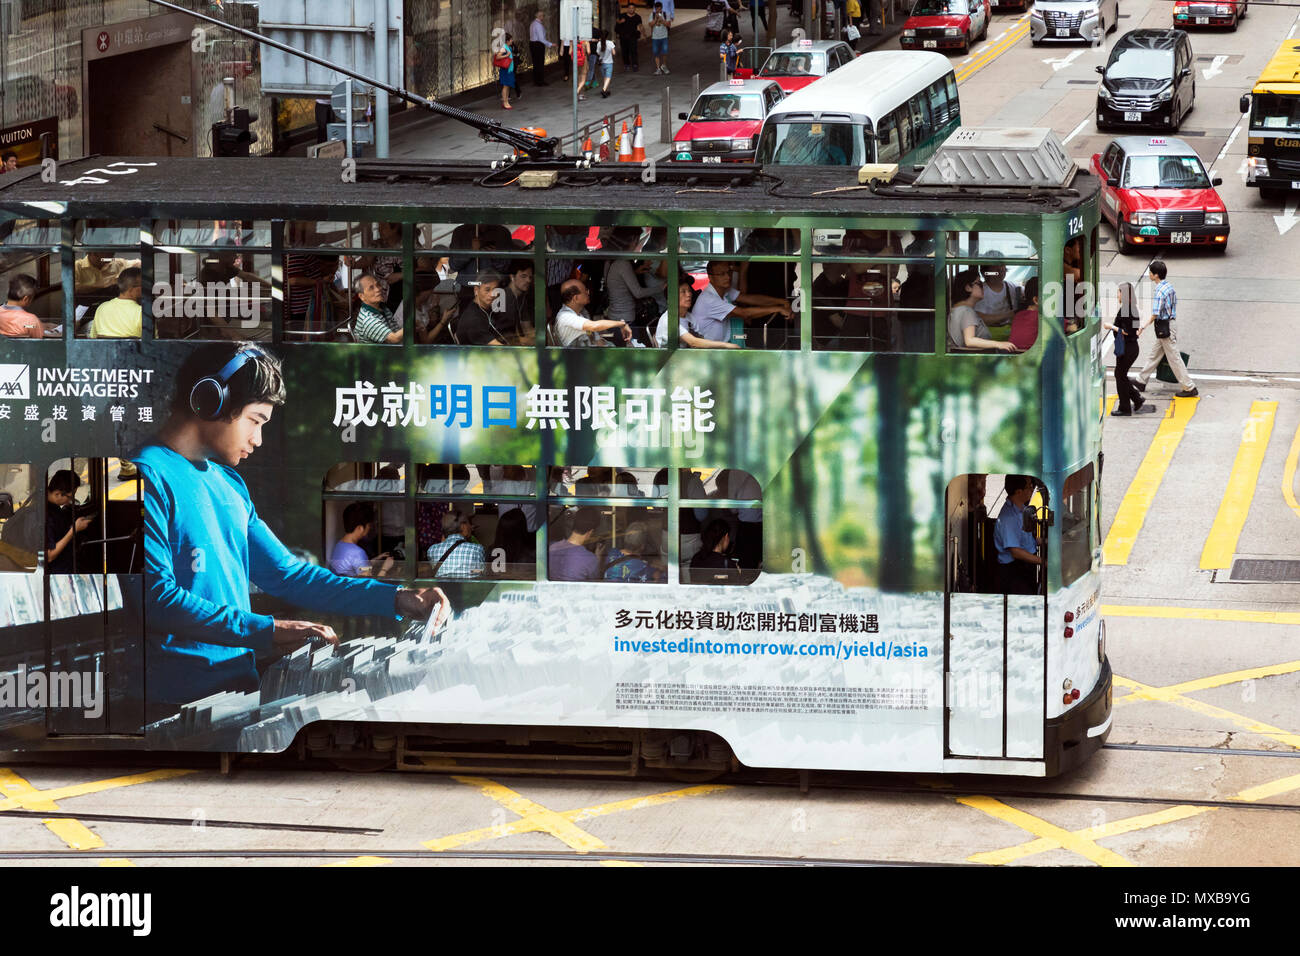 Tram and passengers in Central, Hong Kong, SAR, China Stock Photo